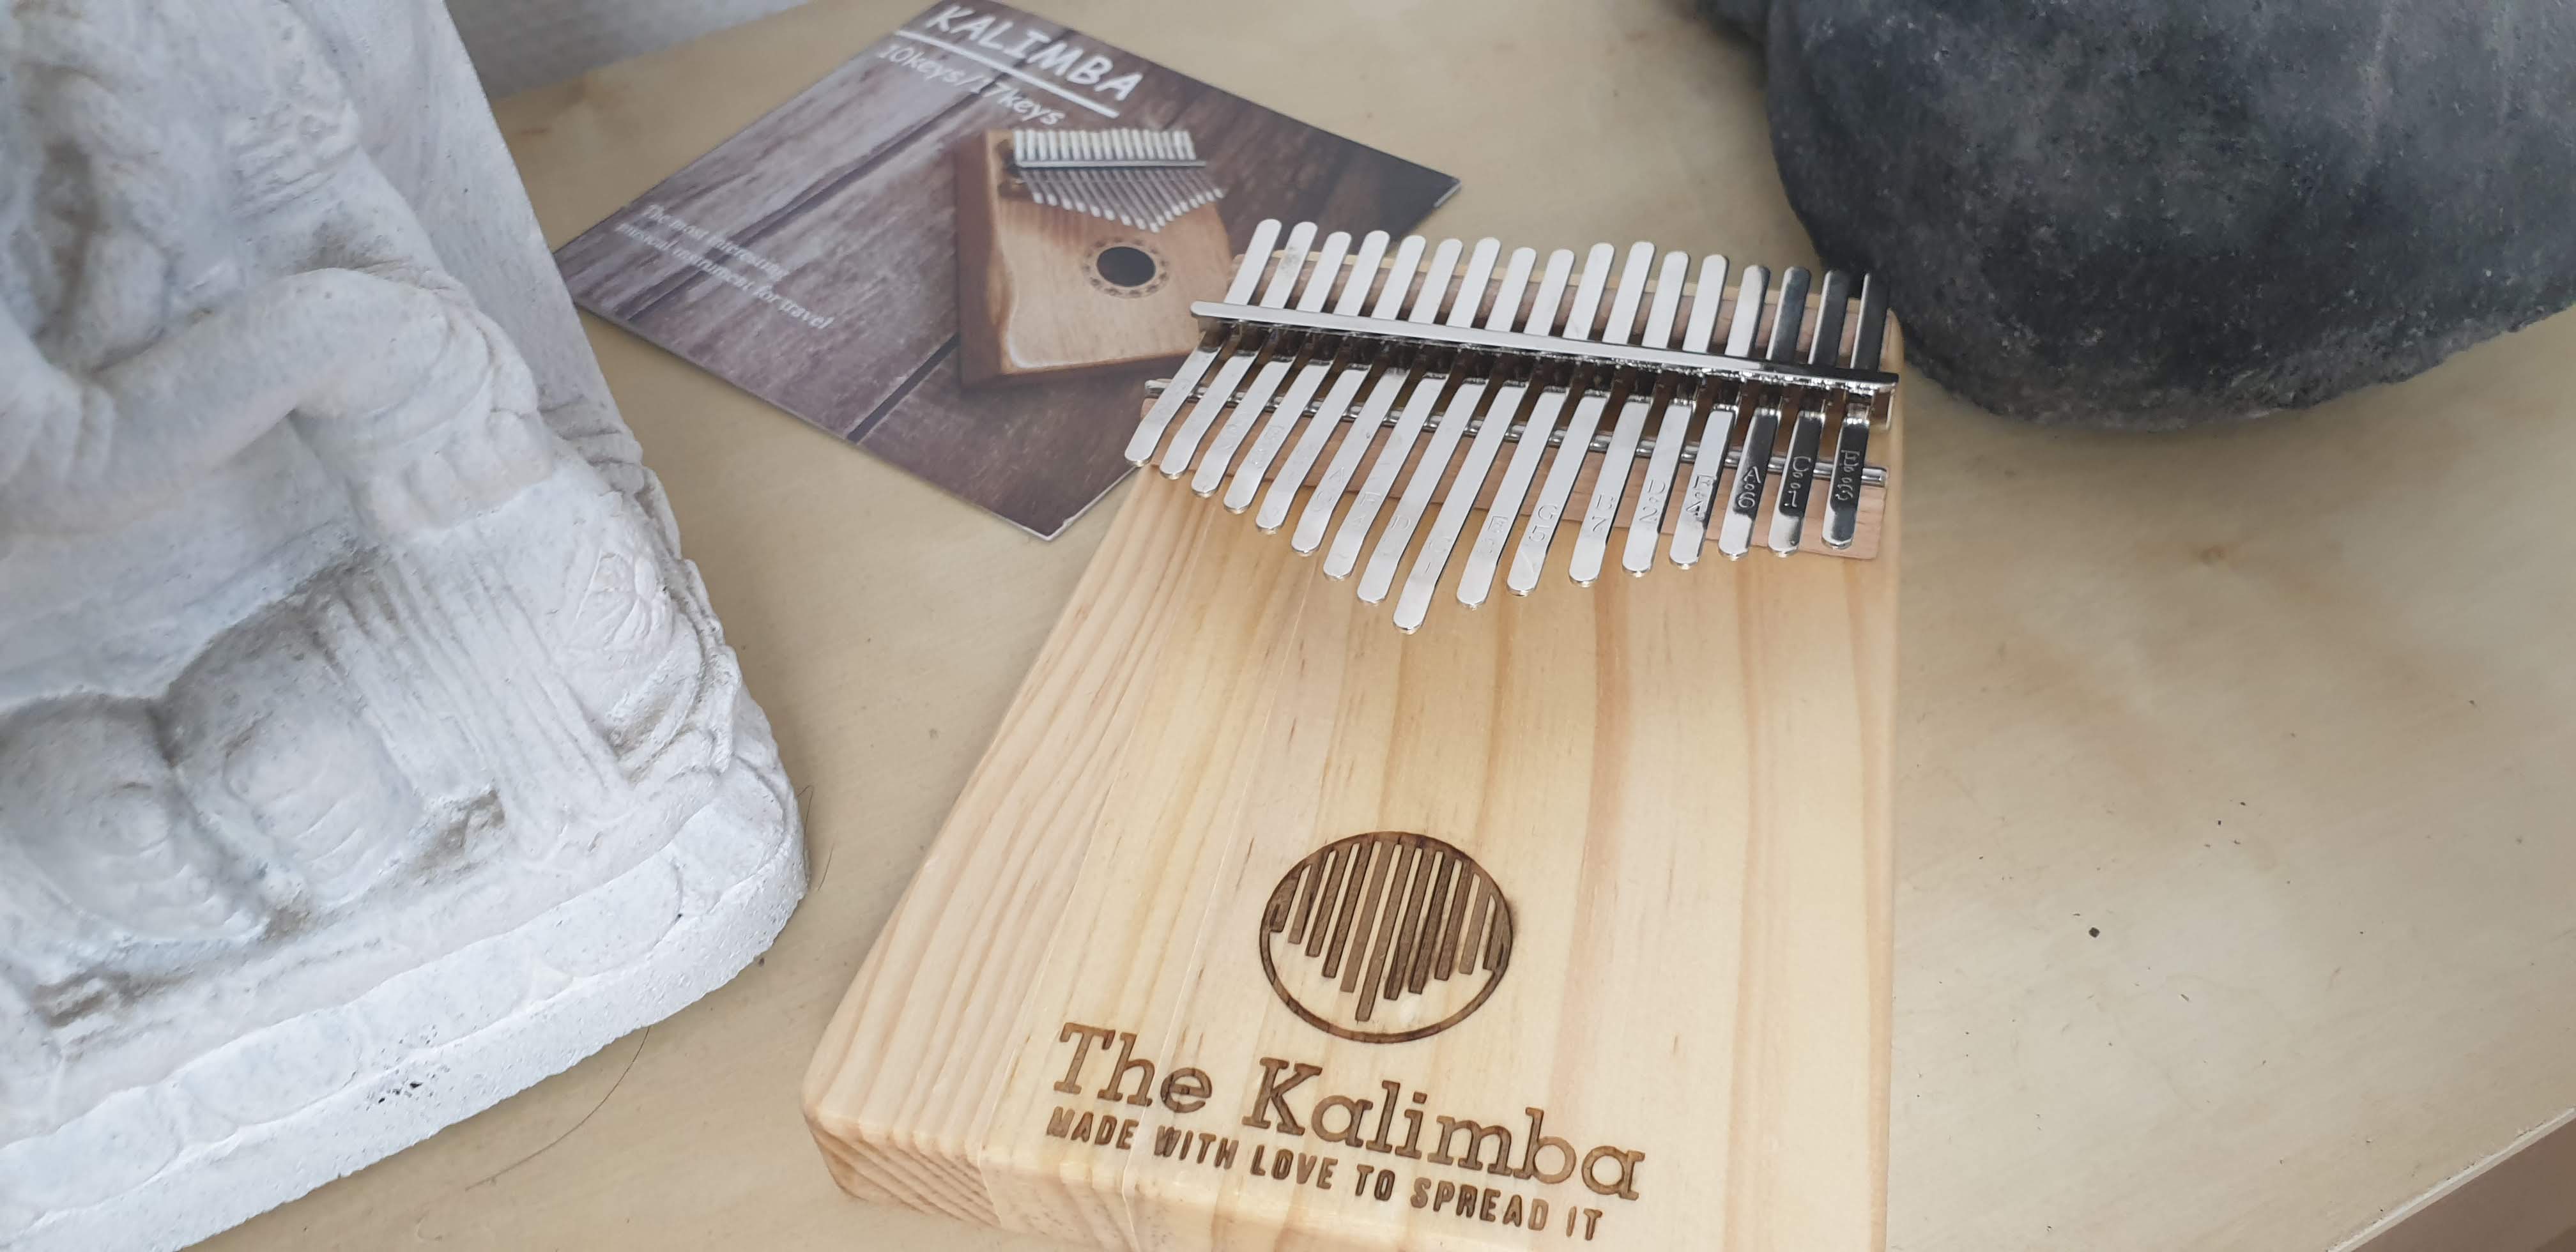 thekalimba® Instrumento de kalimba de 17 notas